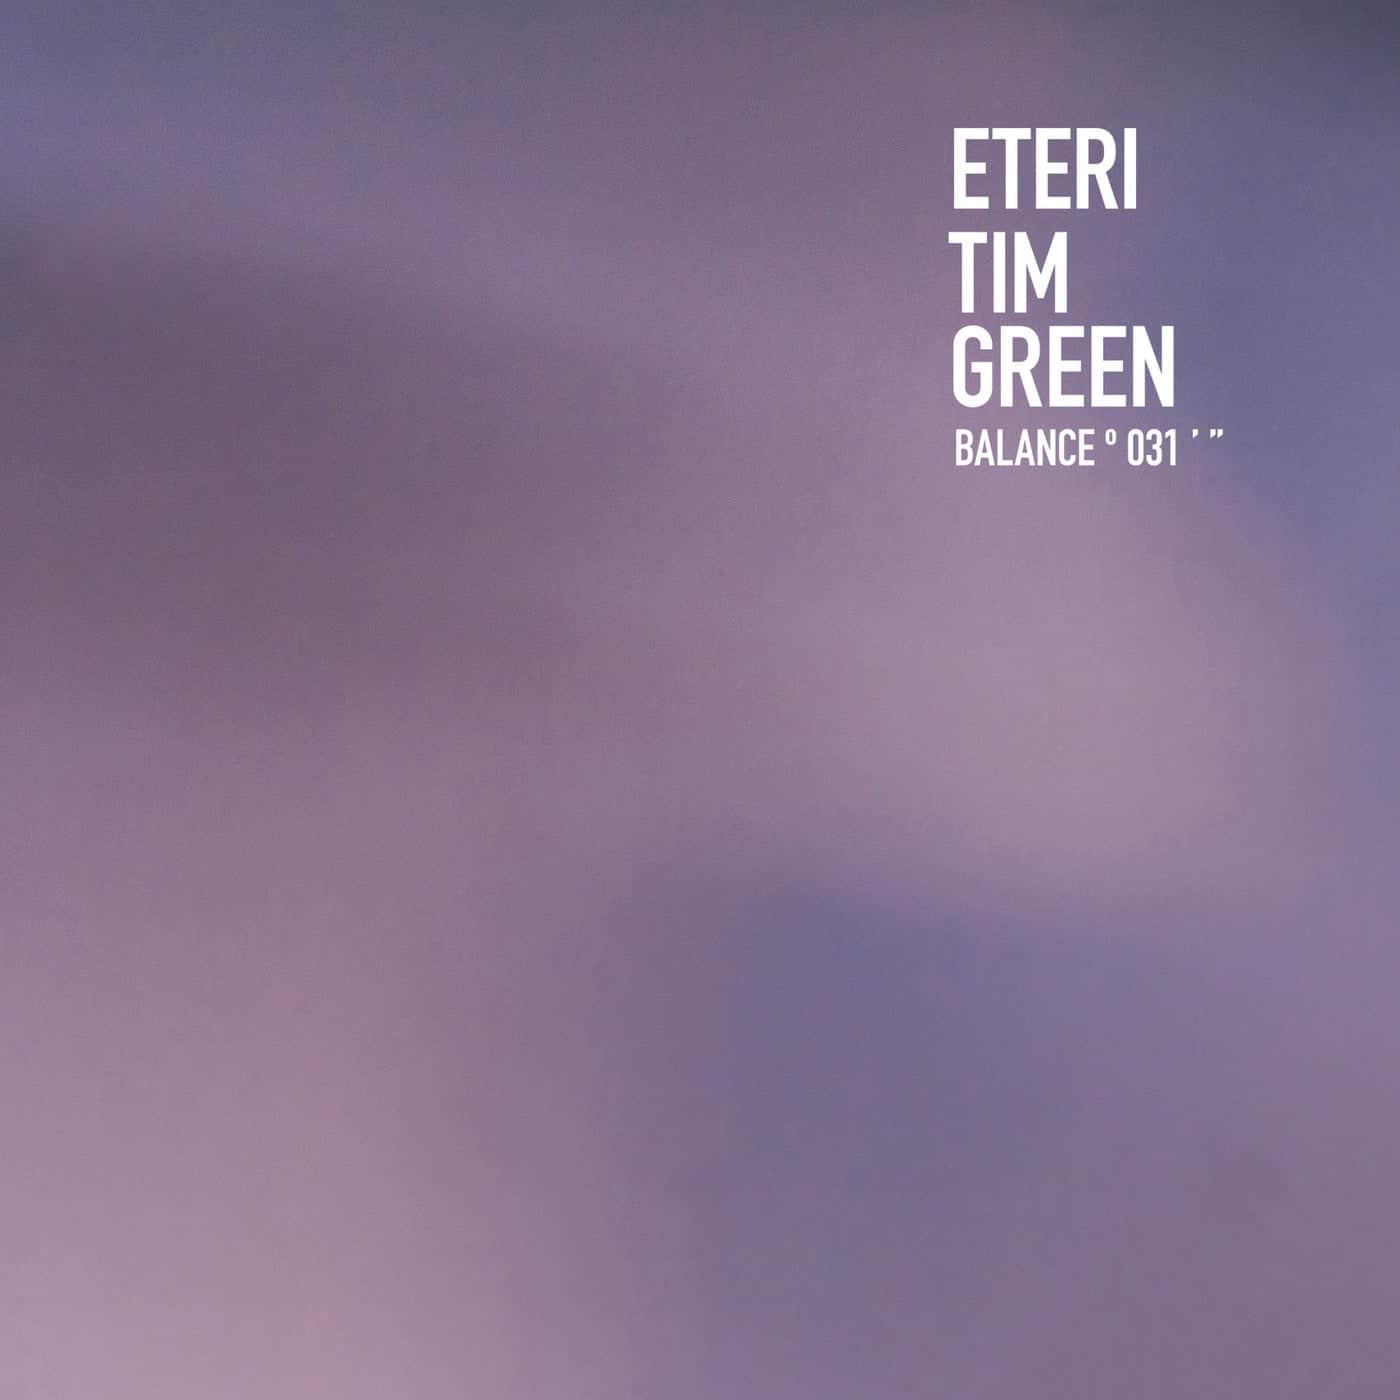 Download Eteri on Electrobuzz